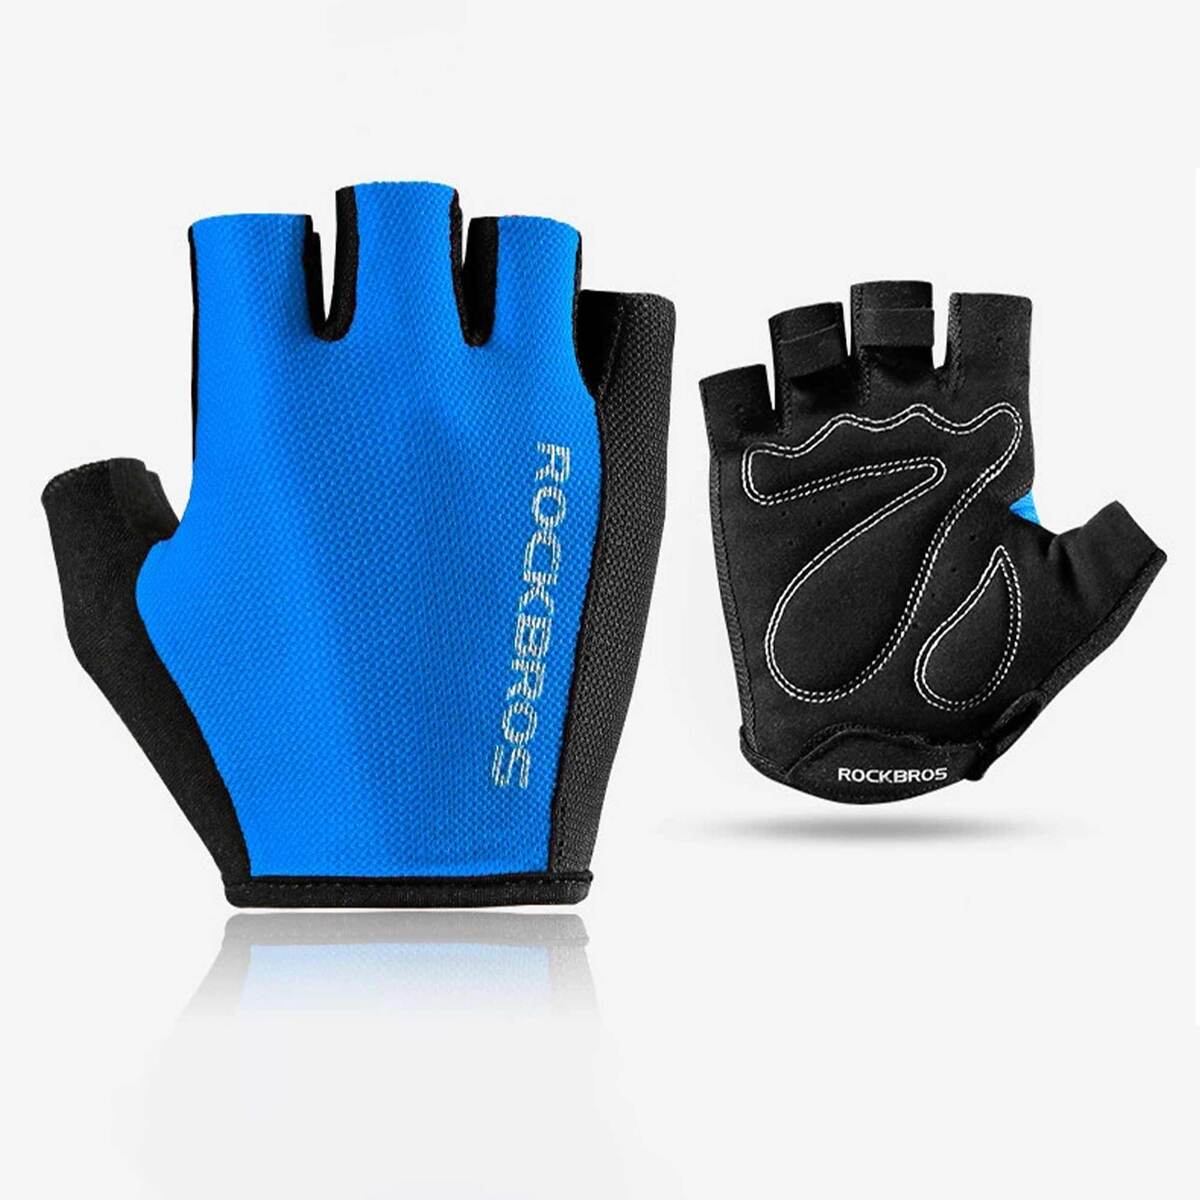 ROCKBROS Half Finger Cycling Gloves Blue S099BL Medium